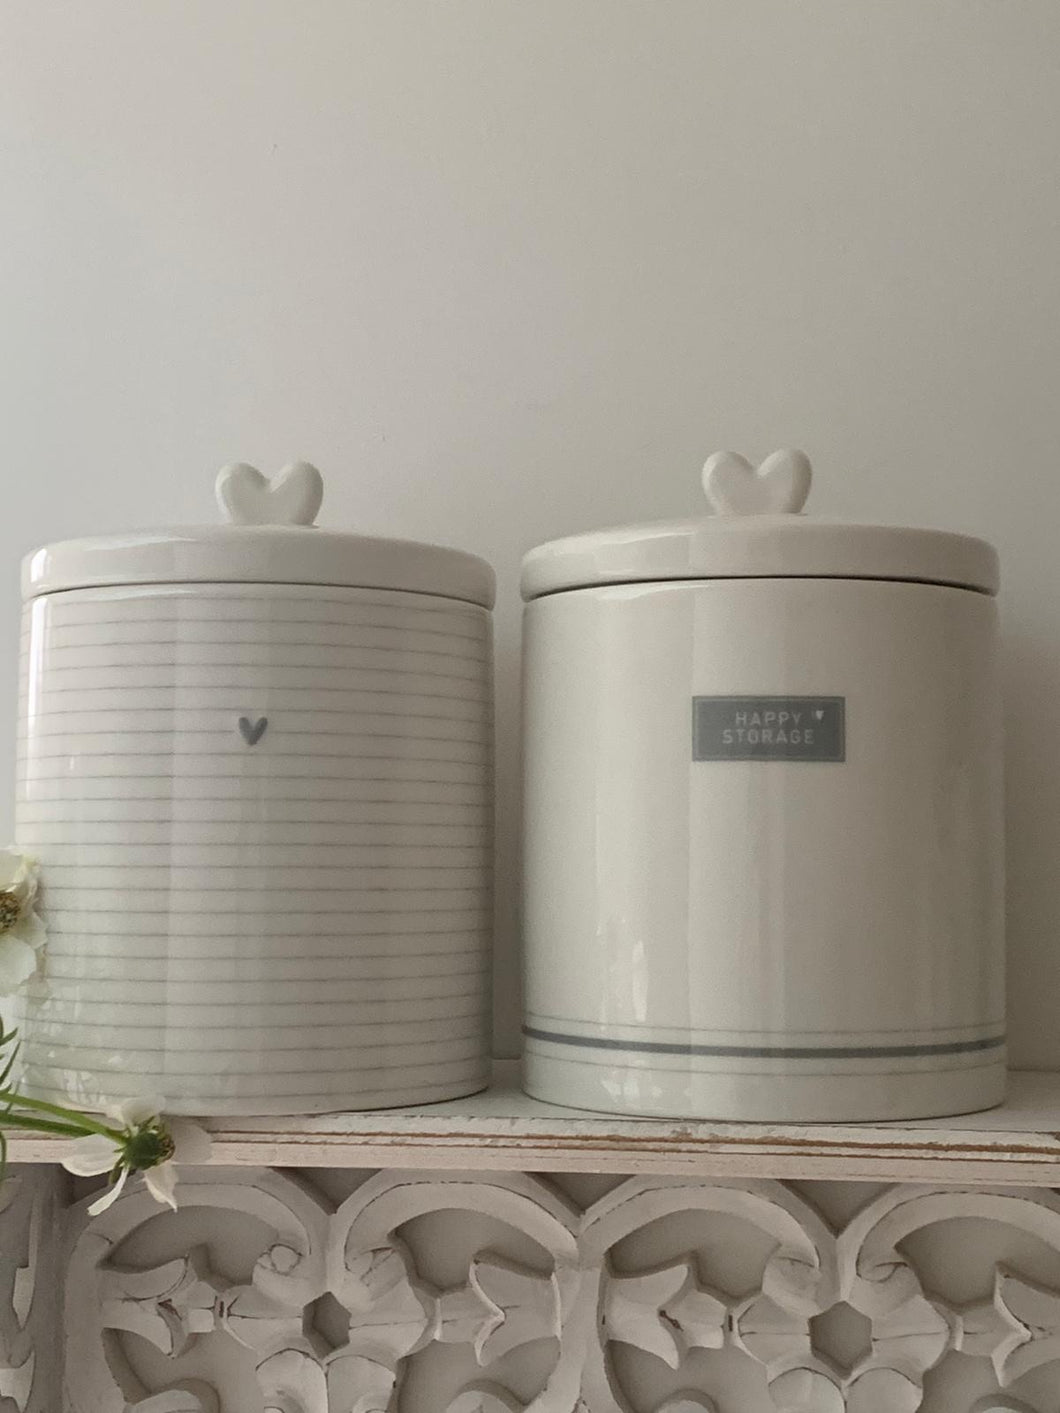 White & grey ceramic storage jars ... LARGE 2 designs